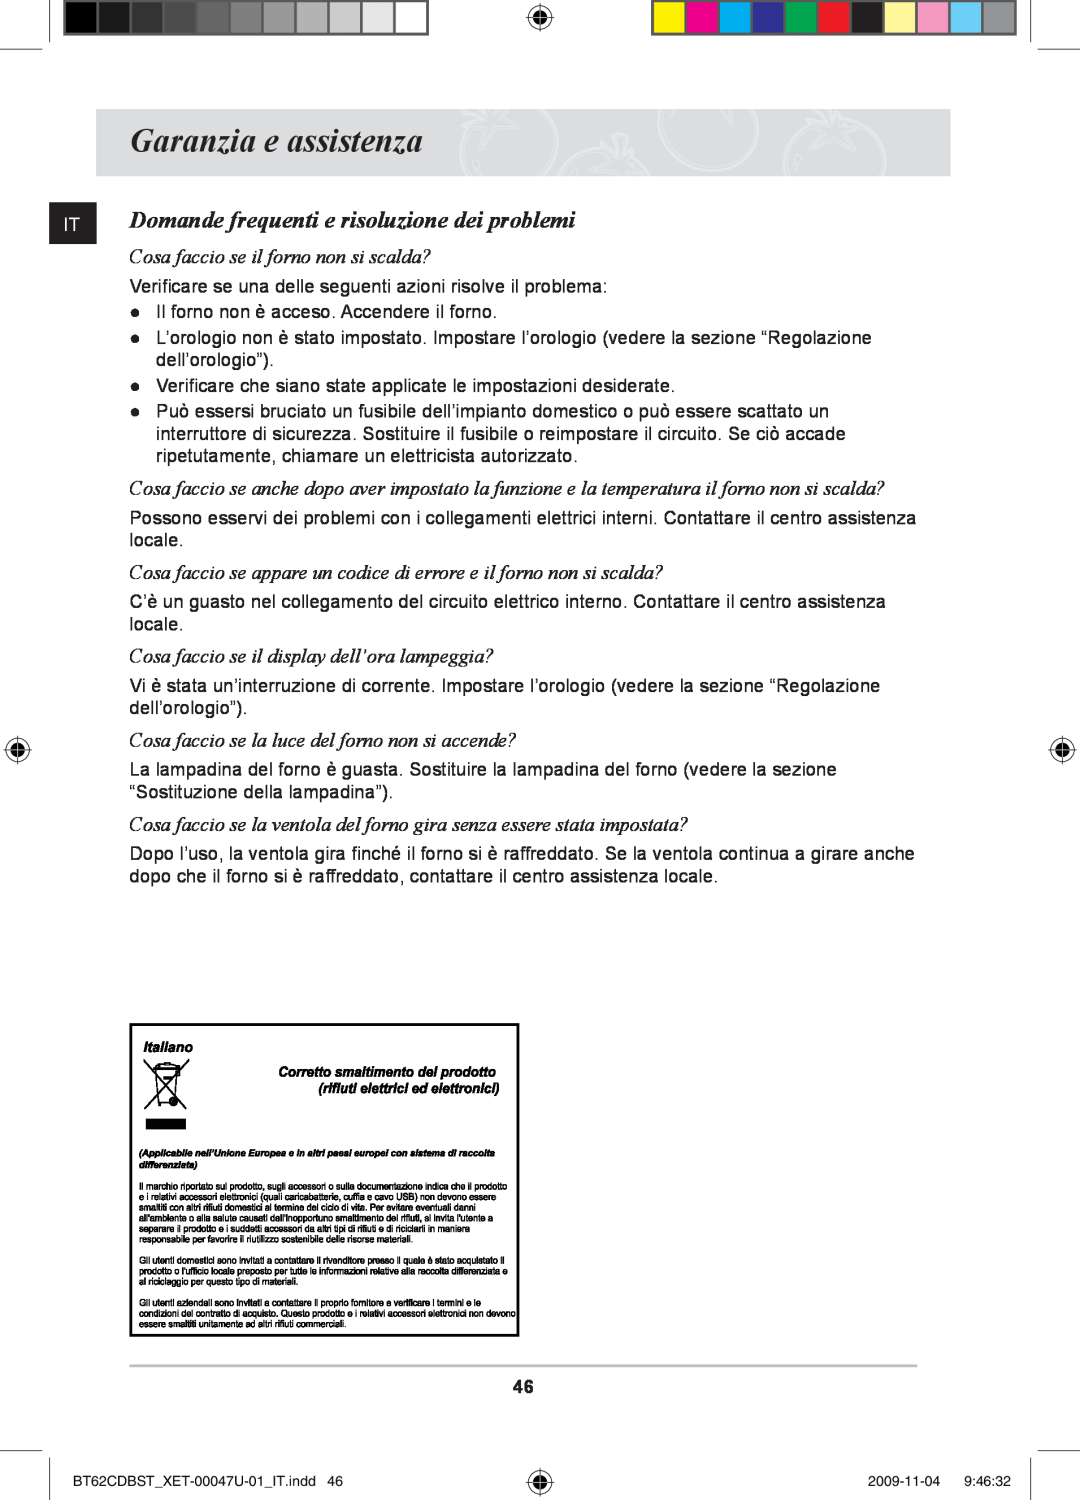 Samsung BT62CDBST/XET manual Garanzia e assistenza, Domande frequenti e risoluzione dei problemi 